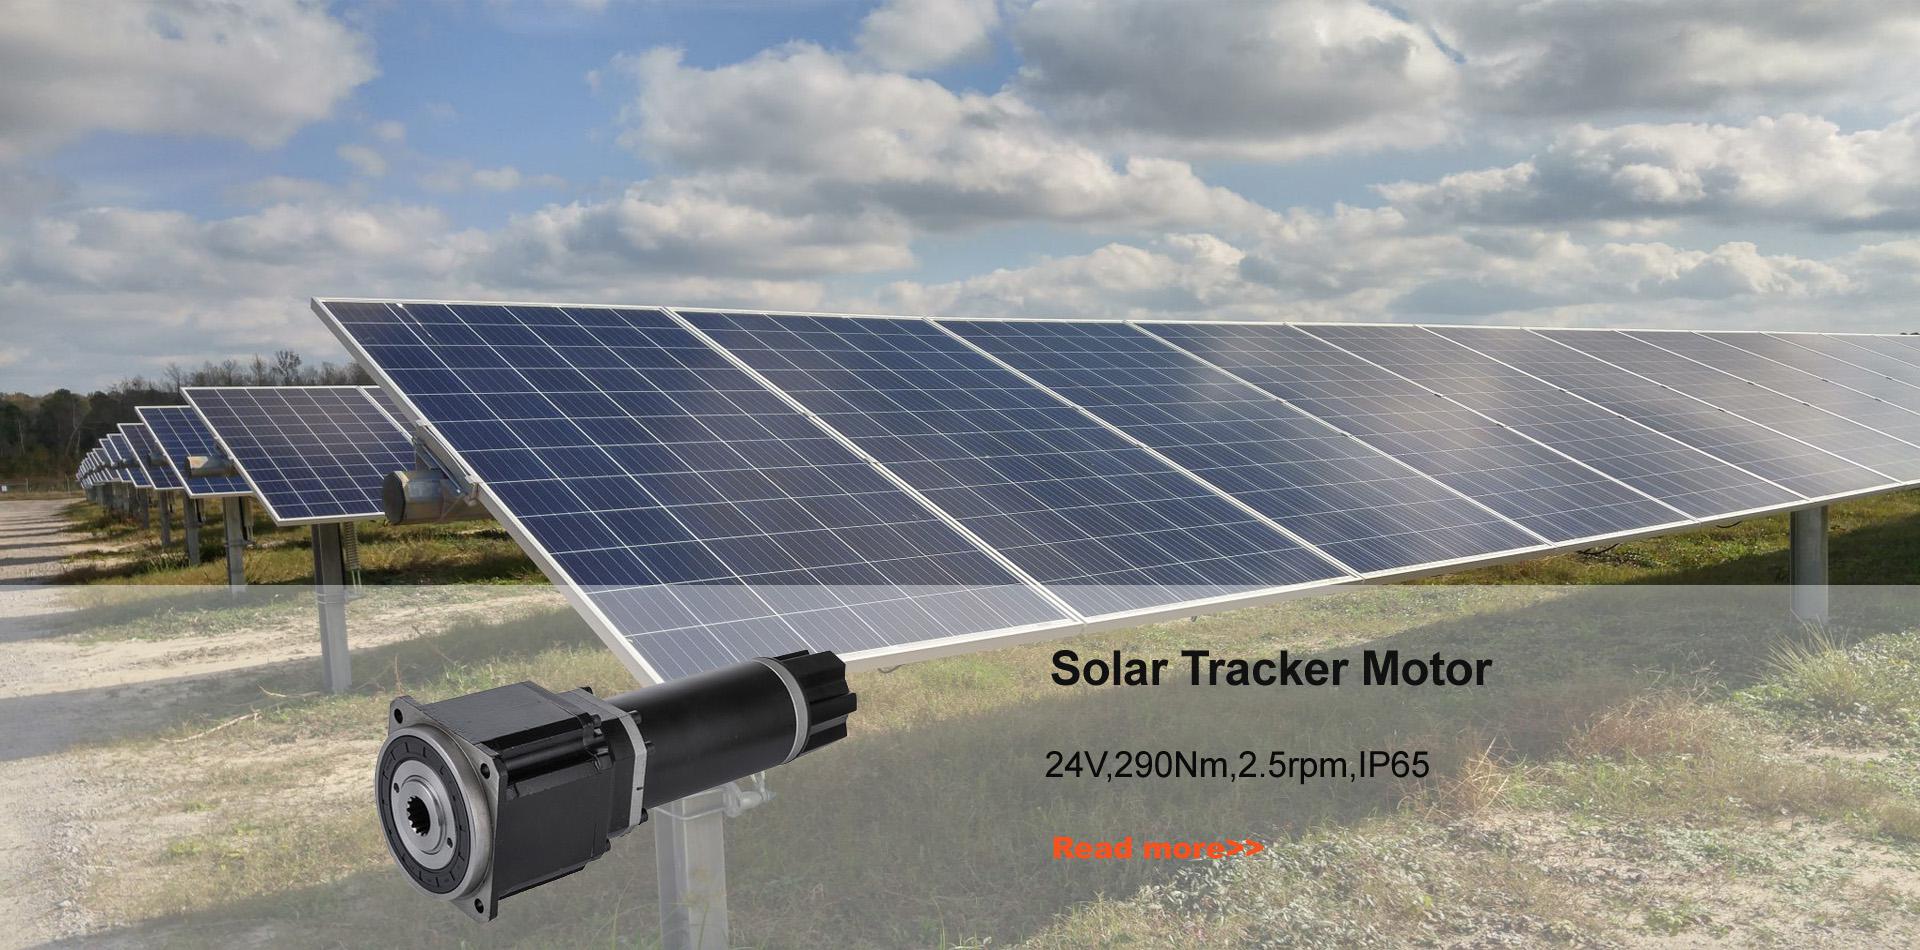 Solar Tracker Motor